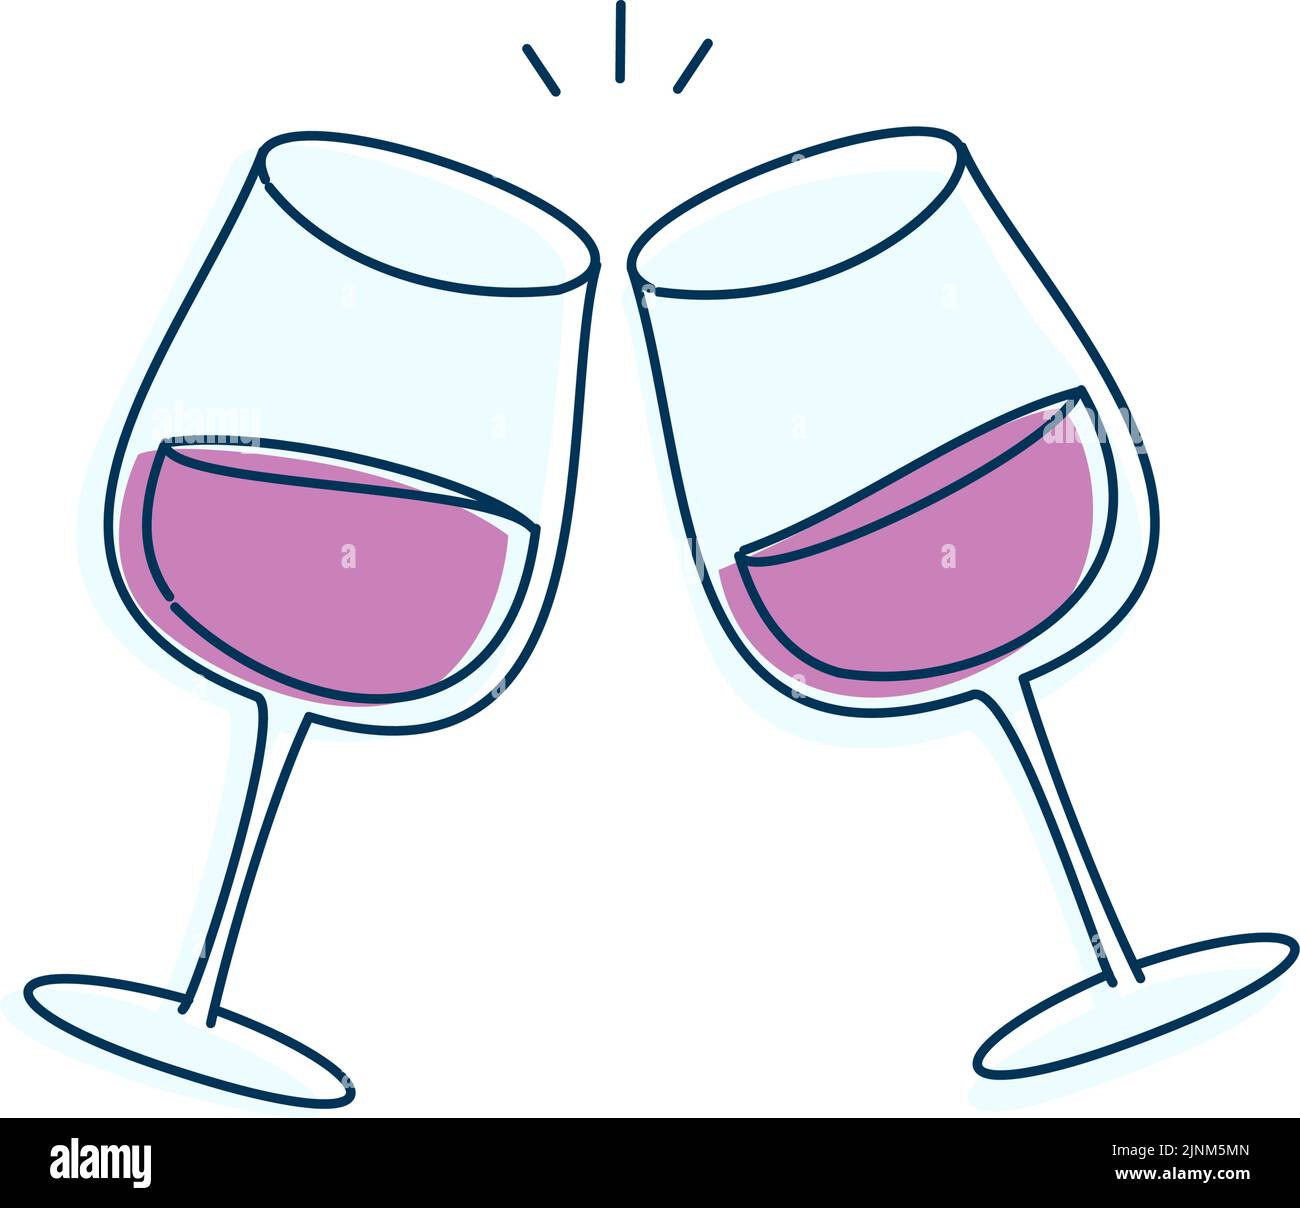 Immagine che mostra la tostatura con il vino Illustrazione Vettoriale